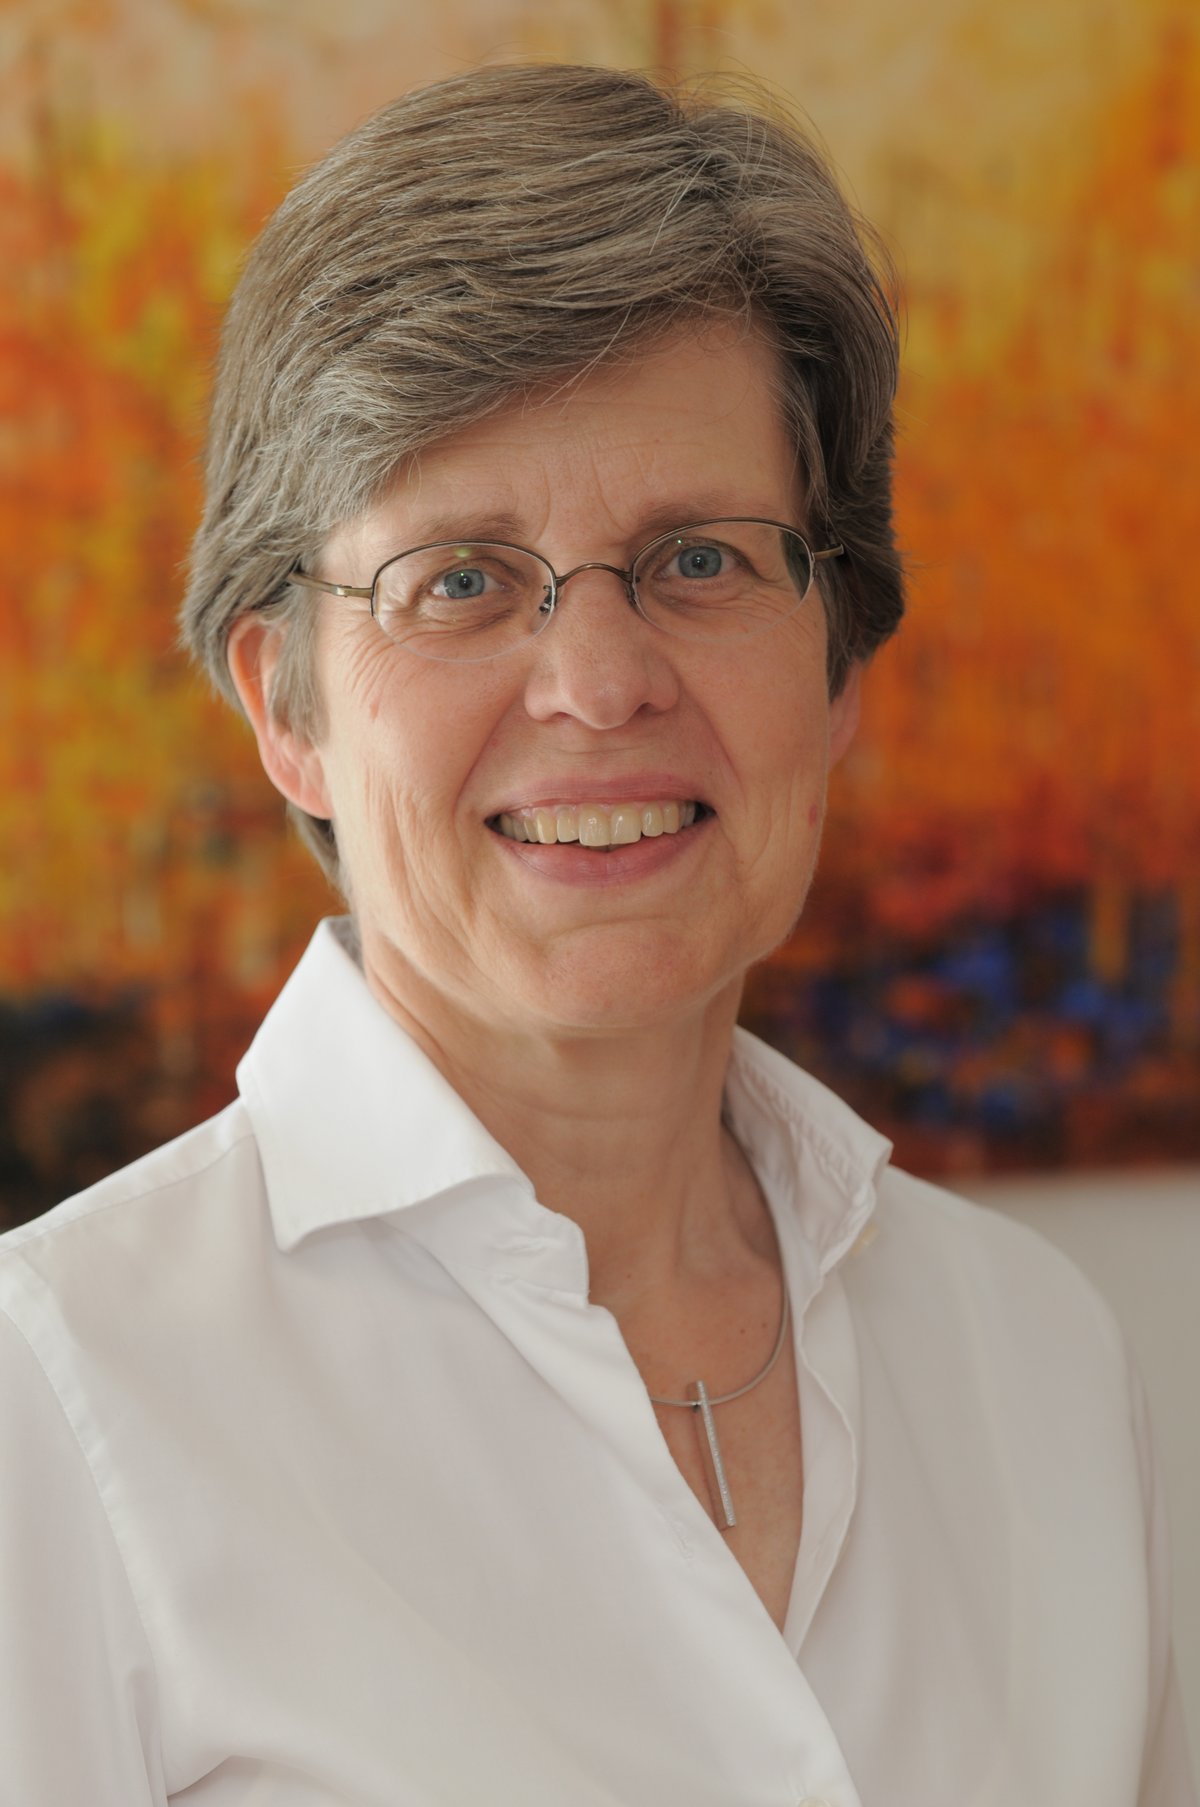 Dr. Stefanie Schulte-Hinsken